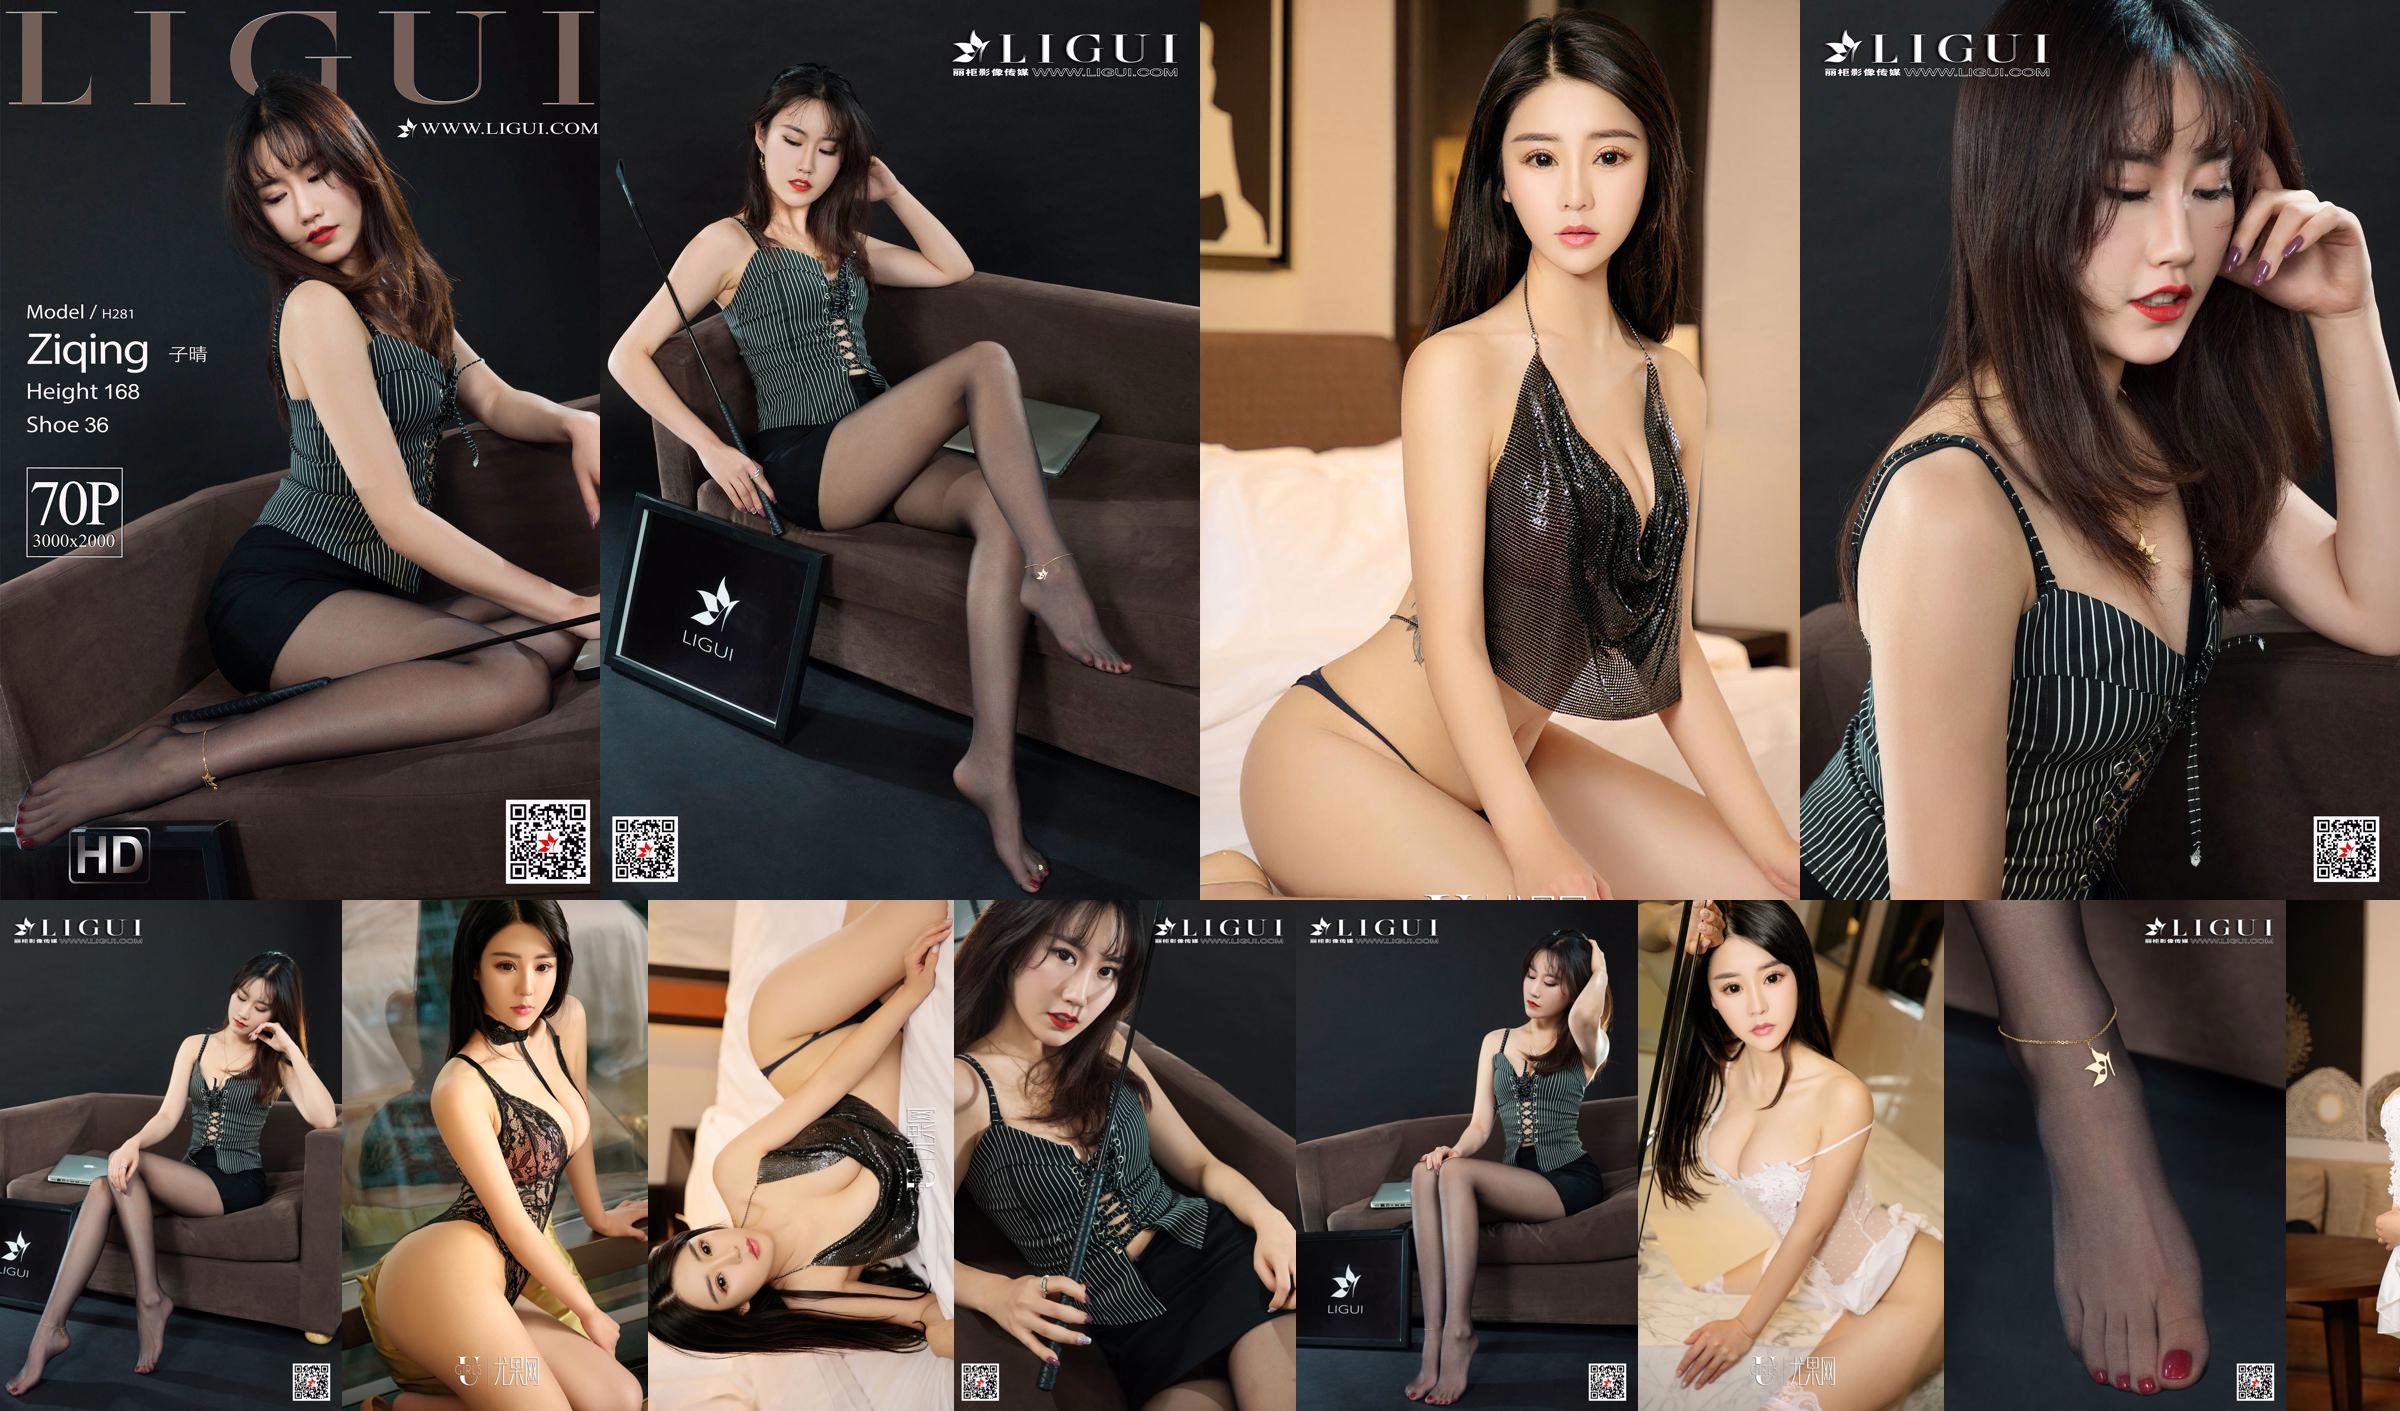 Model Ziqing "The Best Female Secretary" [Ligui Ligui] No.c5265d Page 1